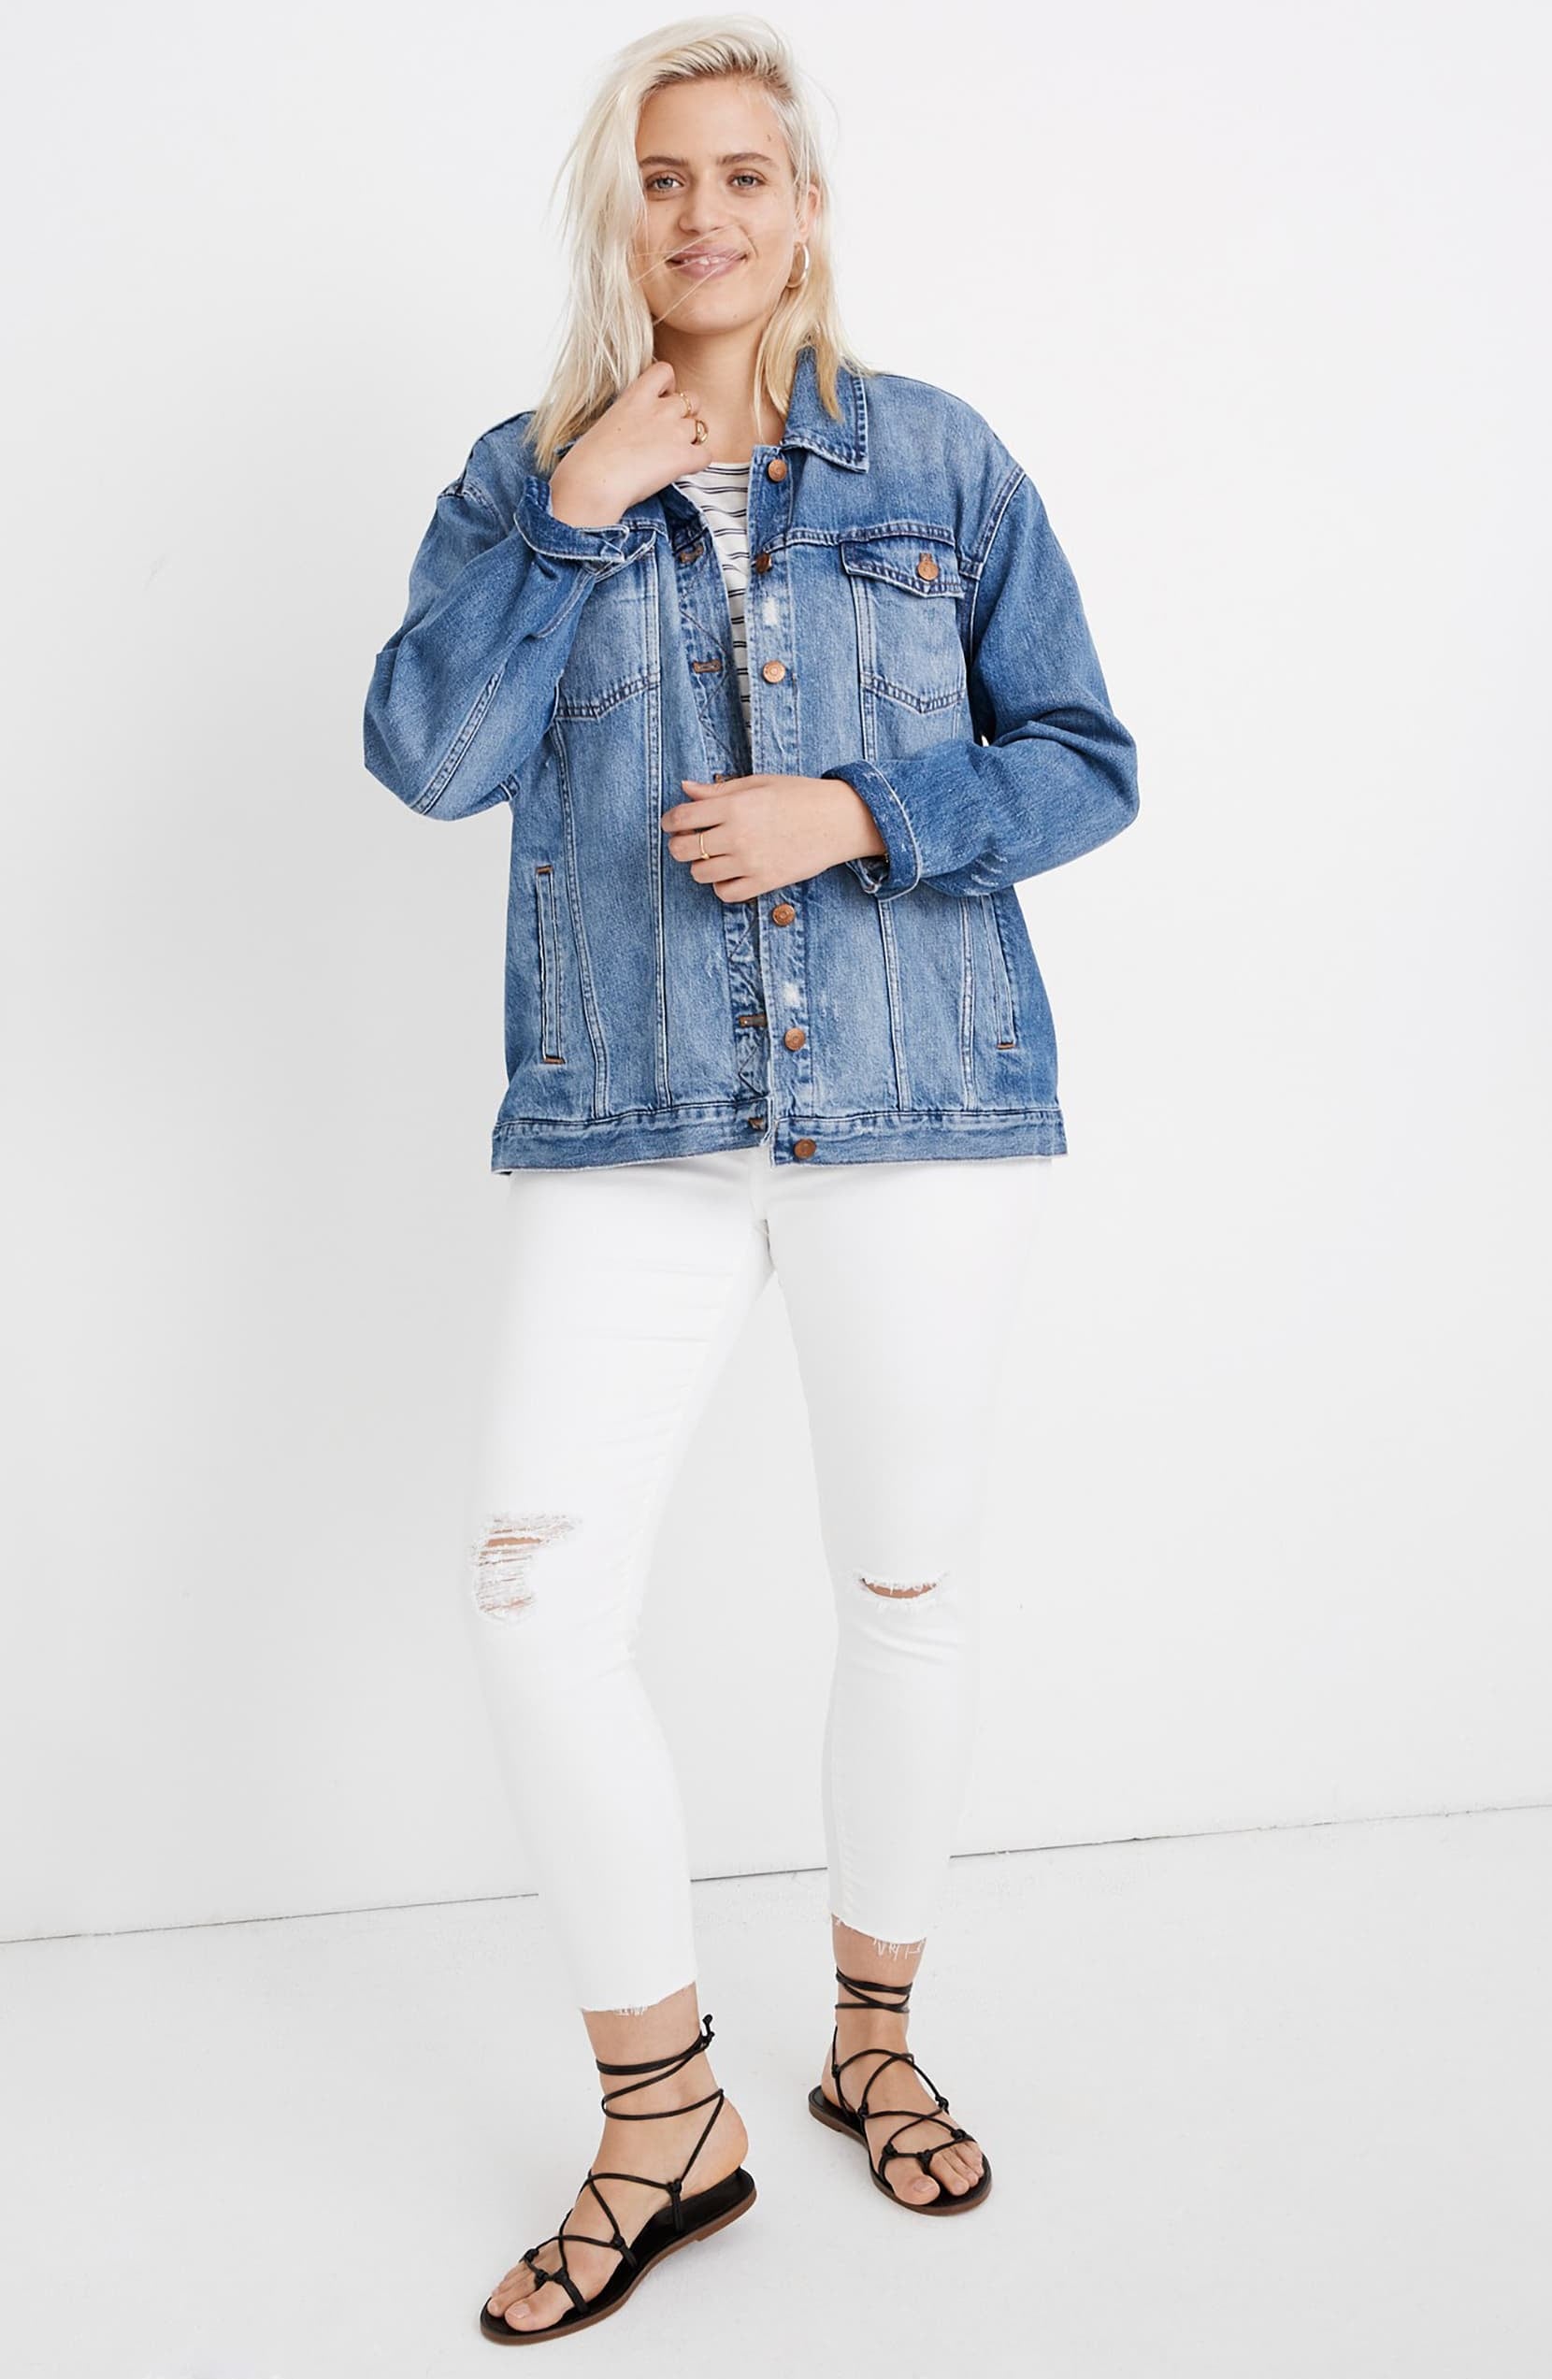 ZJHANHGKK thin jean jacket women for summer  